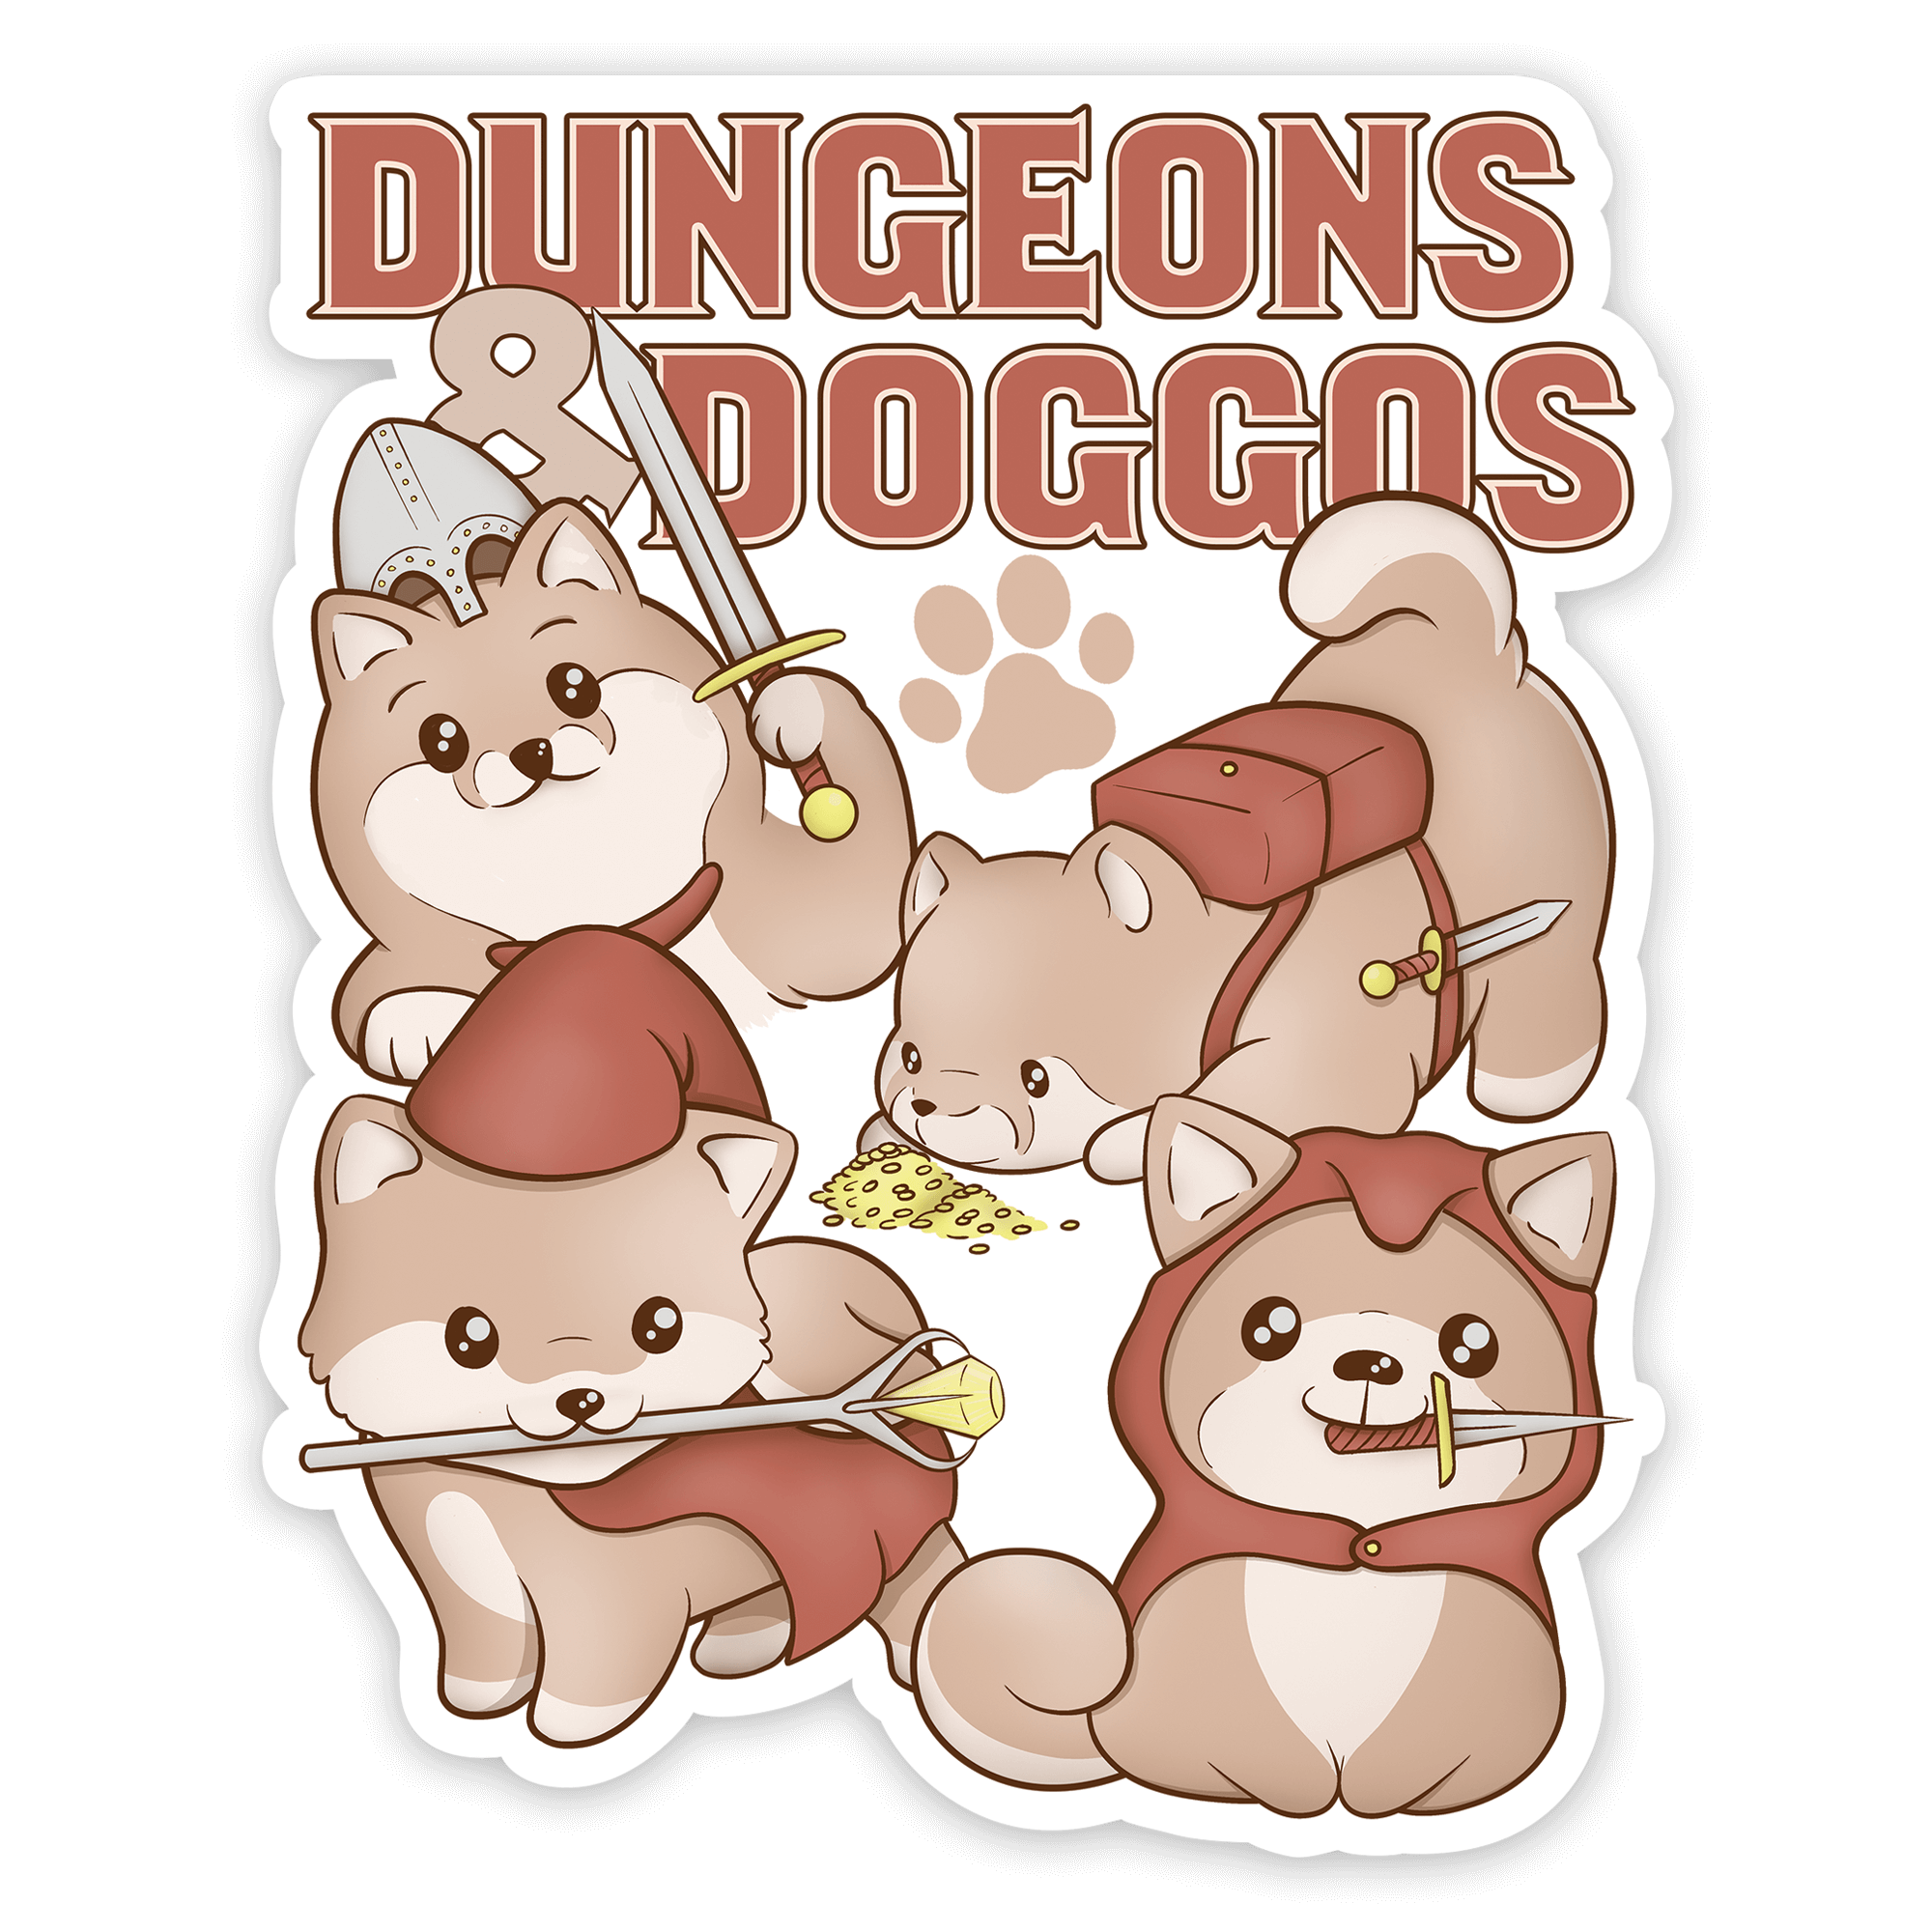 Dungeons & Doggos Sticker - D&D / TTRPG Sticker - Glassstaff